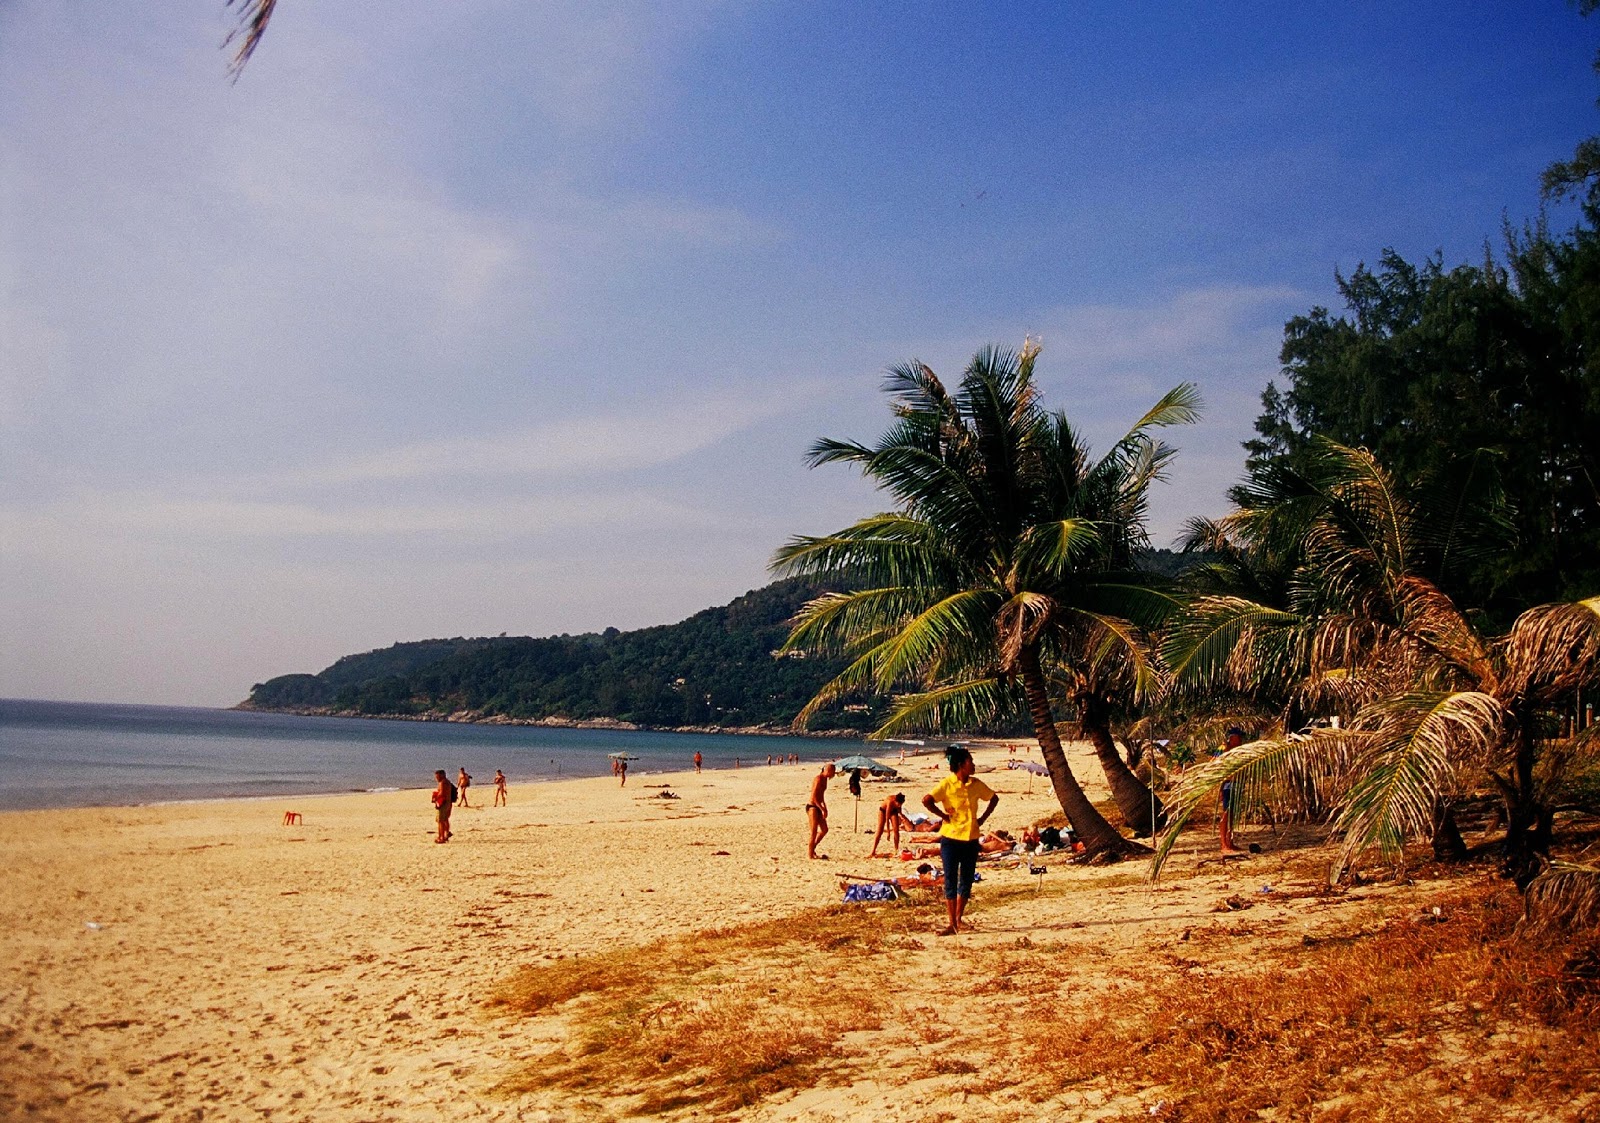 Karon Beach   Wikipedia, the free encyclopedia